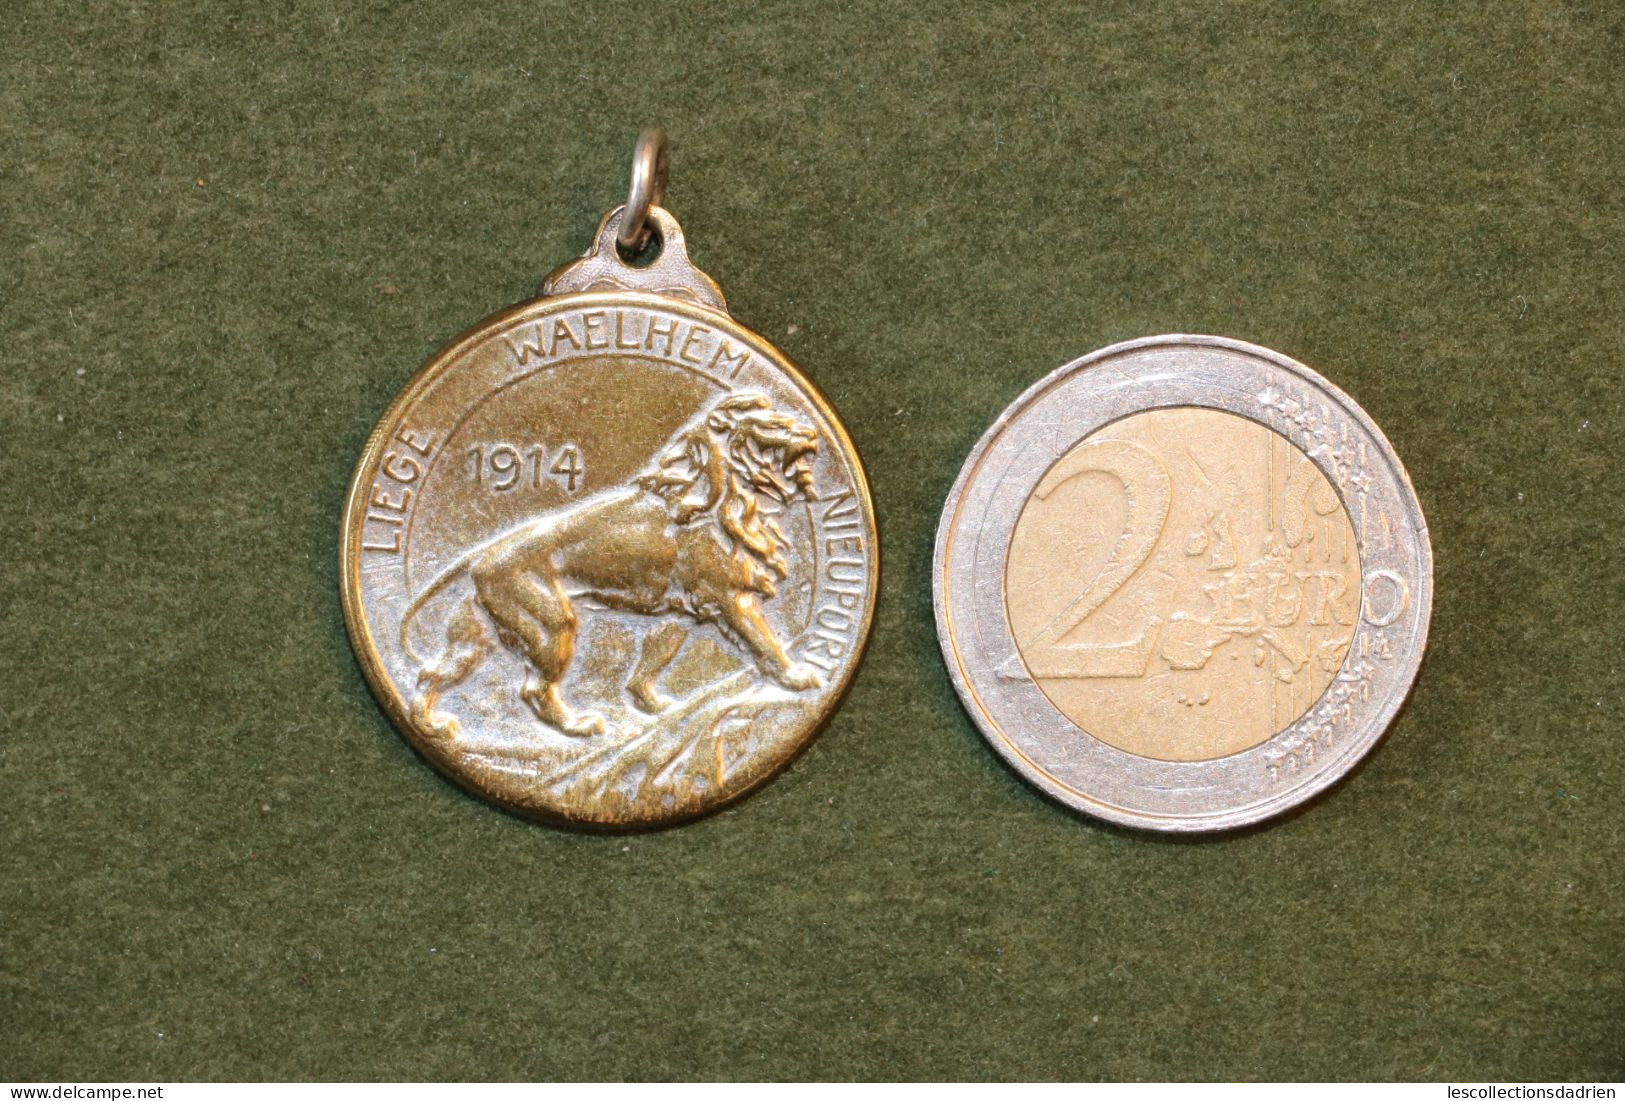 Médaille Belge Liège Waelhem Nieuport Guerre 14-18 - Belgian Medal WWI Médaillette Journée - Belgio